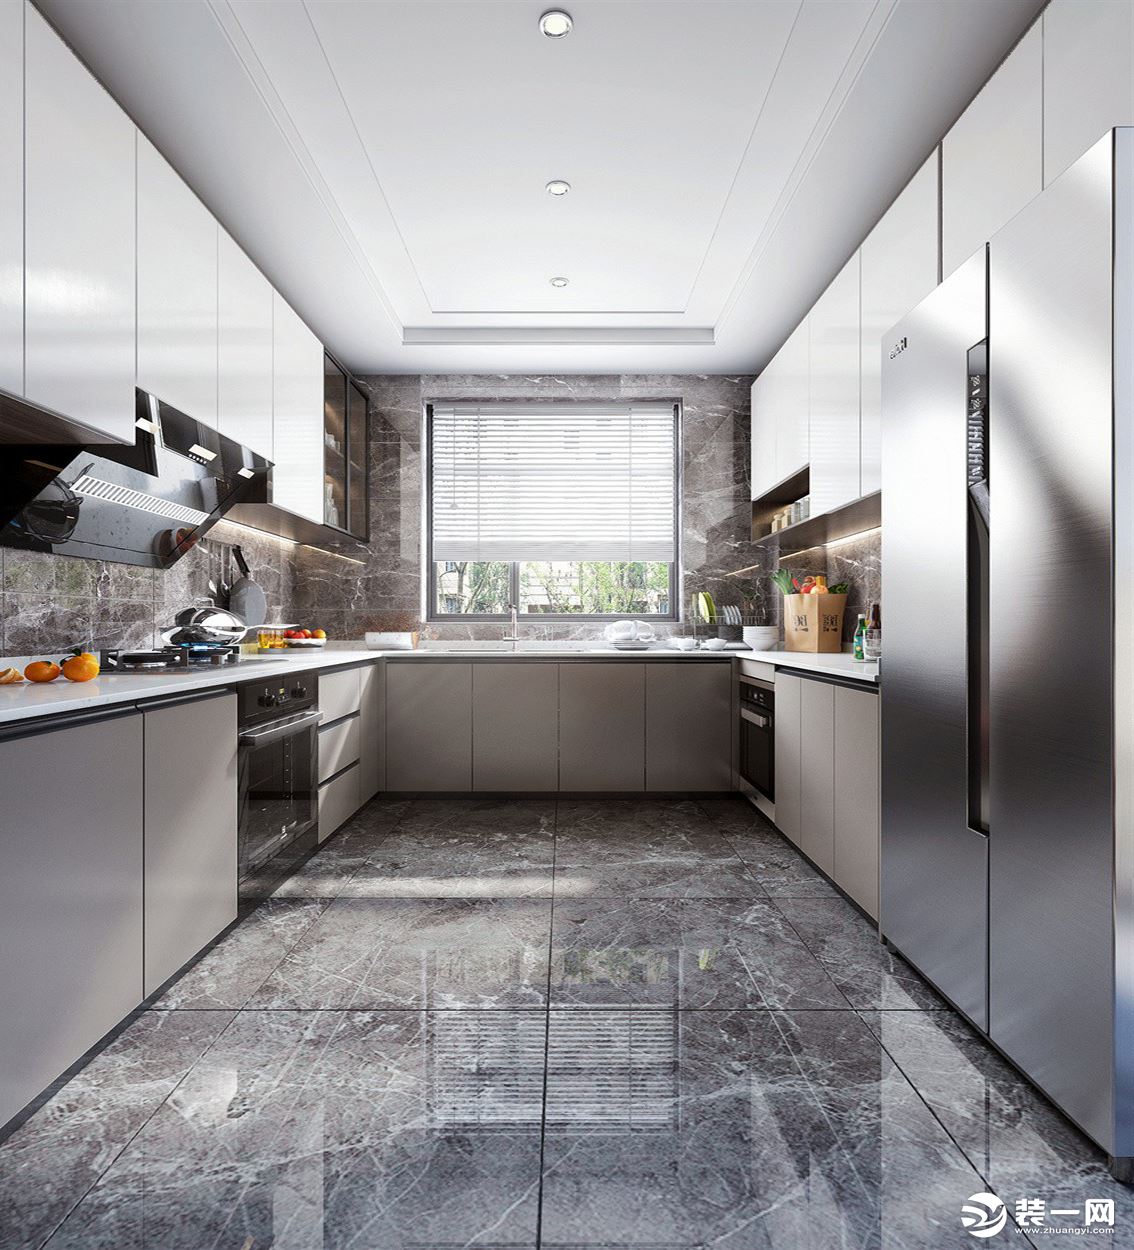 U型厨房设计增加了空间的功能实用性，嵌入式厨房电器可以为烹饪就餐带来愉悦的生活环境。